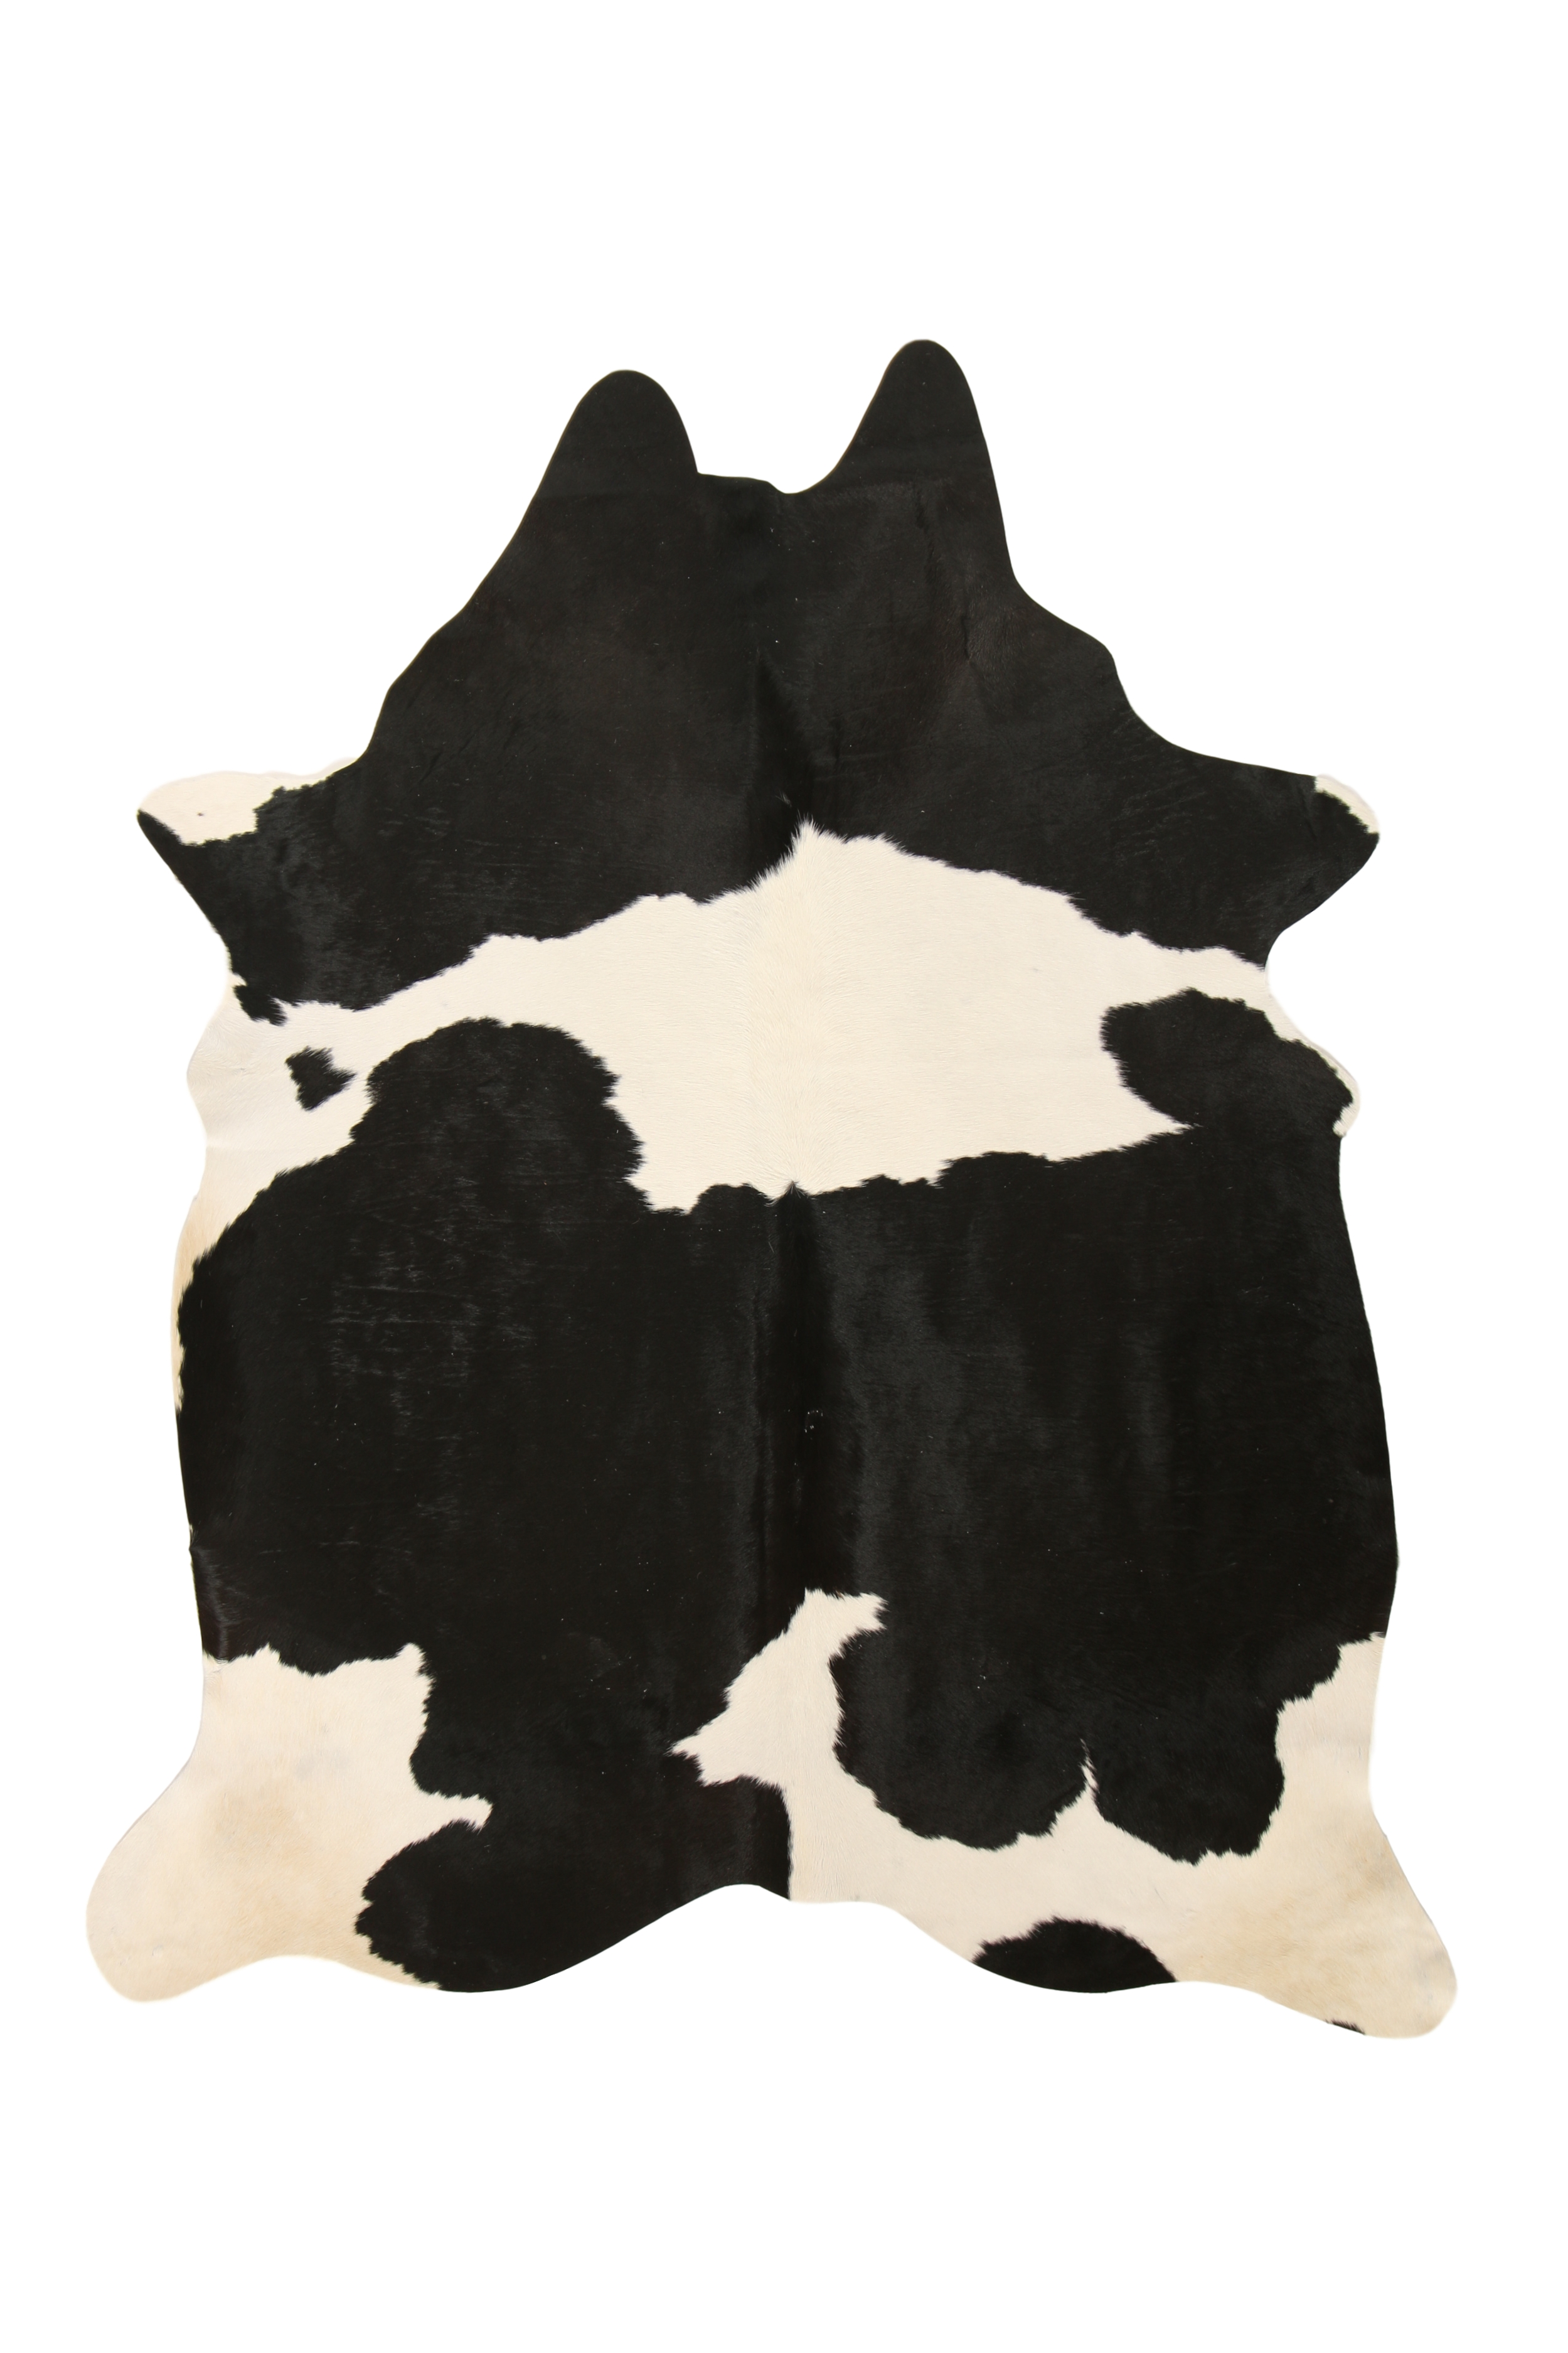 Tapis en peau de vache noir et blanc 180x200